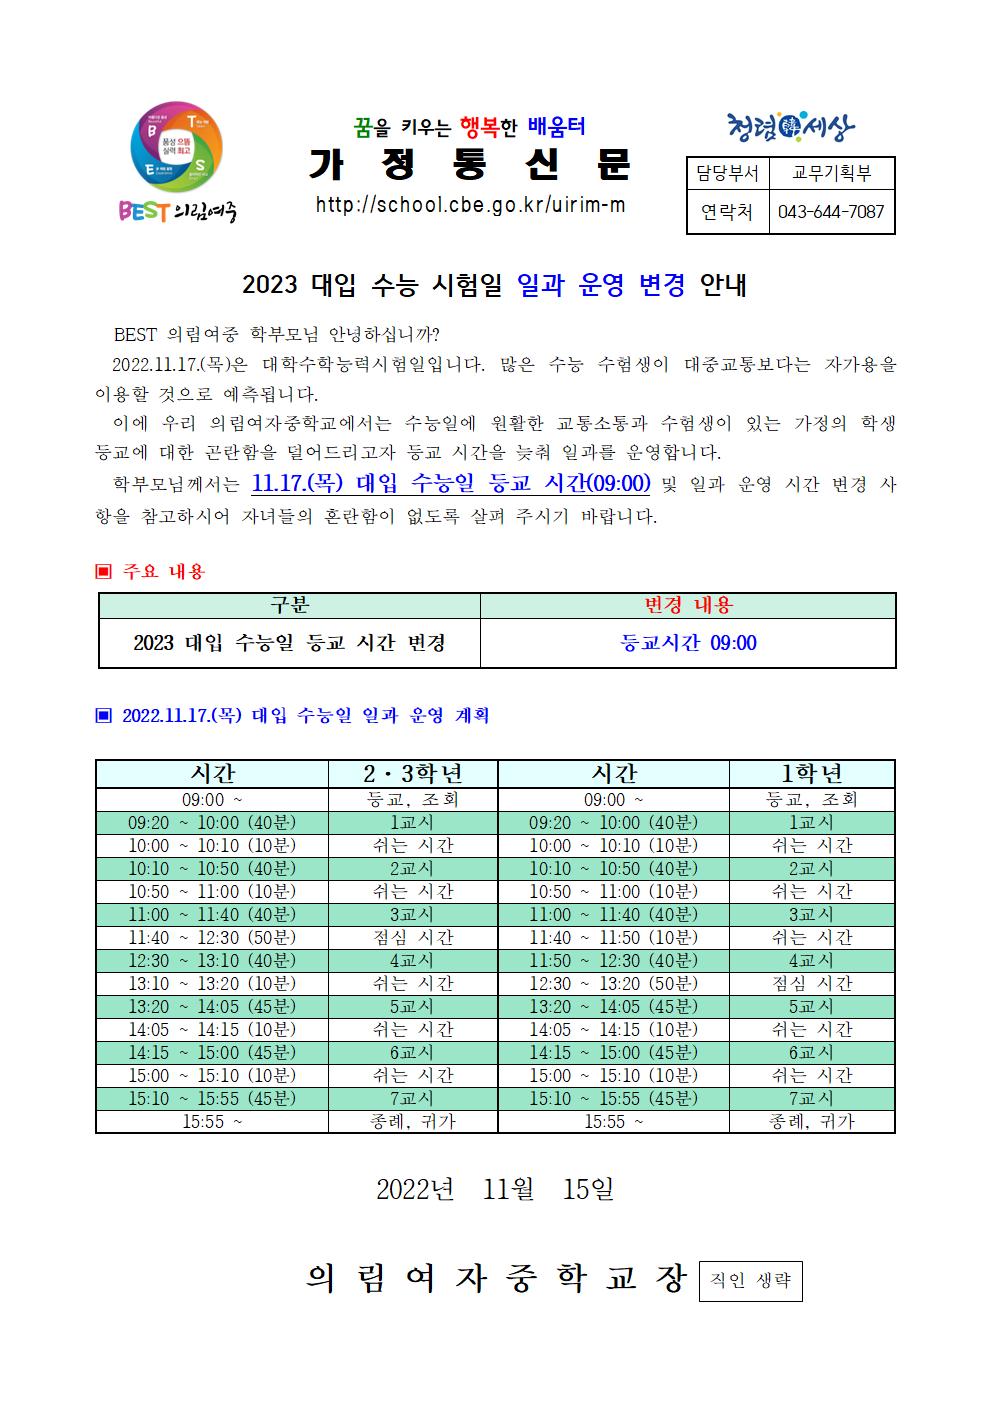 가정통신문-20221115-수능일 일과변경 안내001